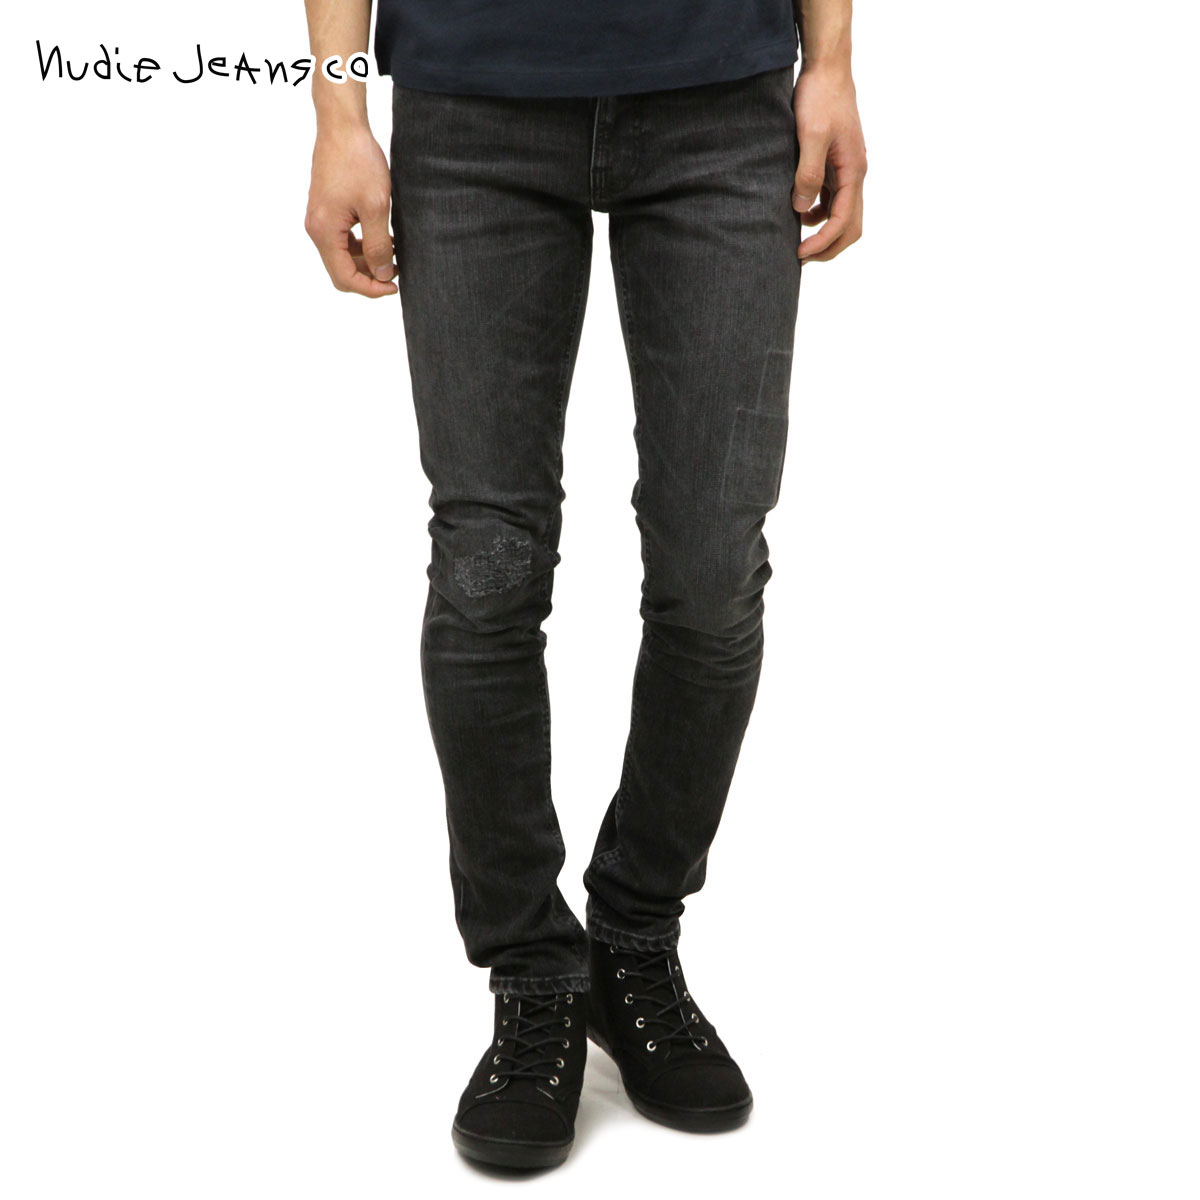 ヌーディージーンズ ジーンズ メンズ 正規販売店 Nudie Jeans ジーパン Lean Dean 654 Grey Patch 112144 D00S20